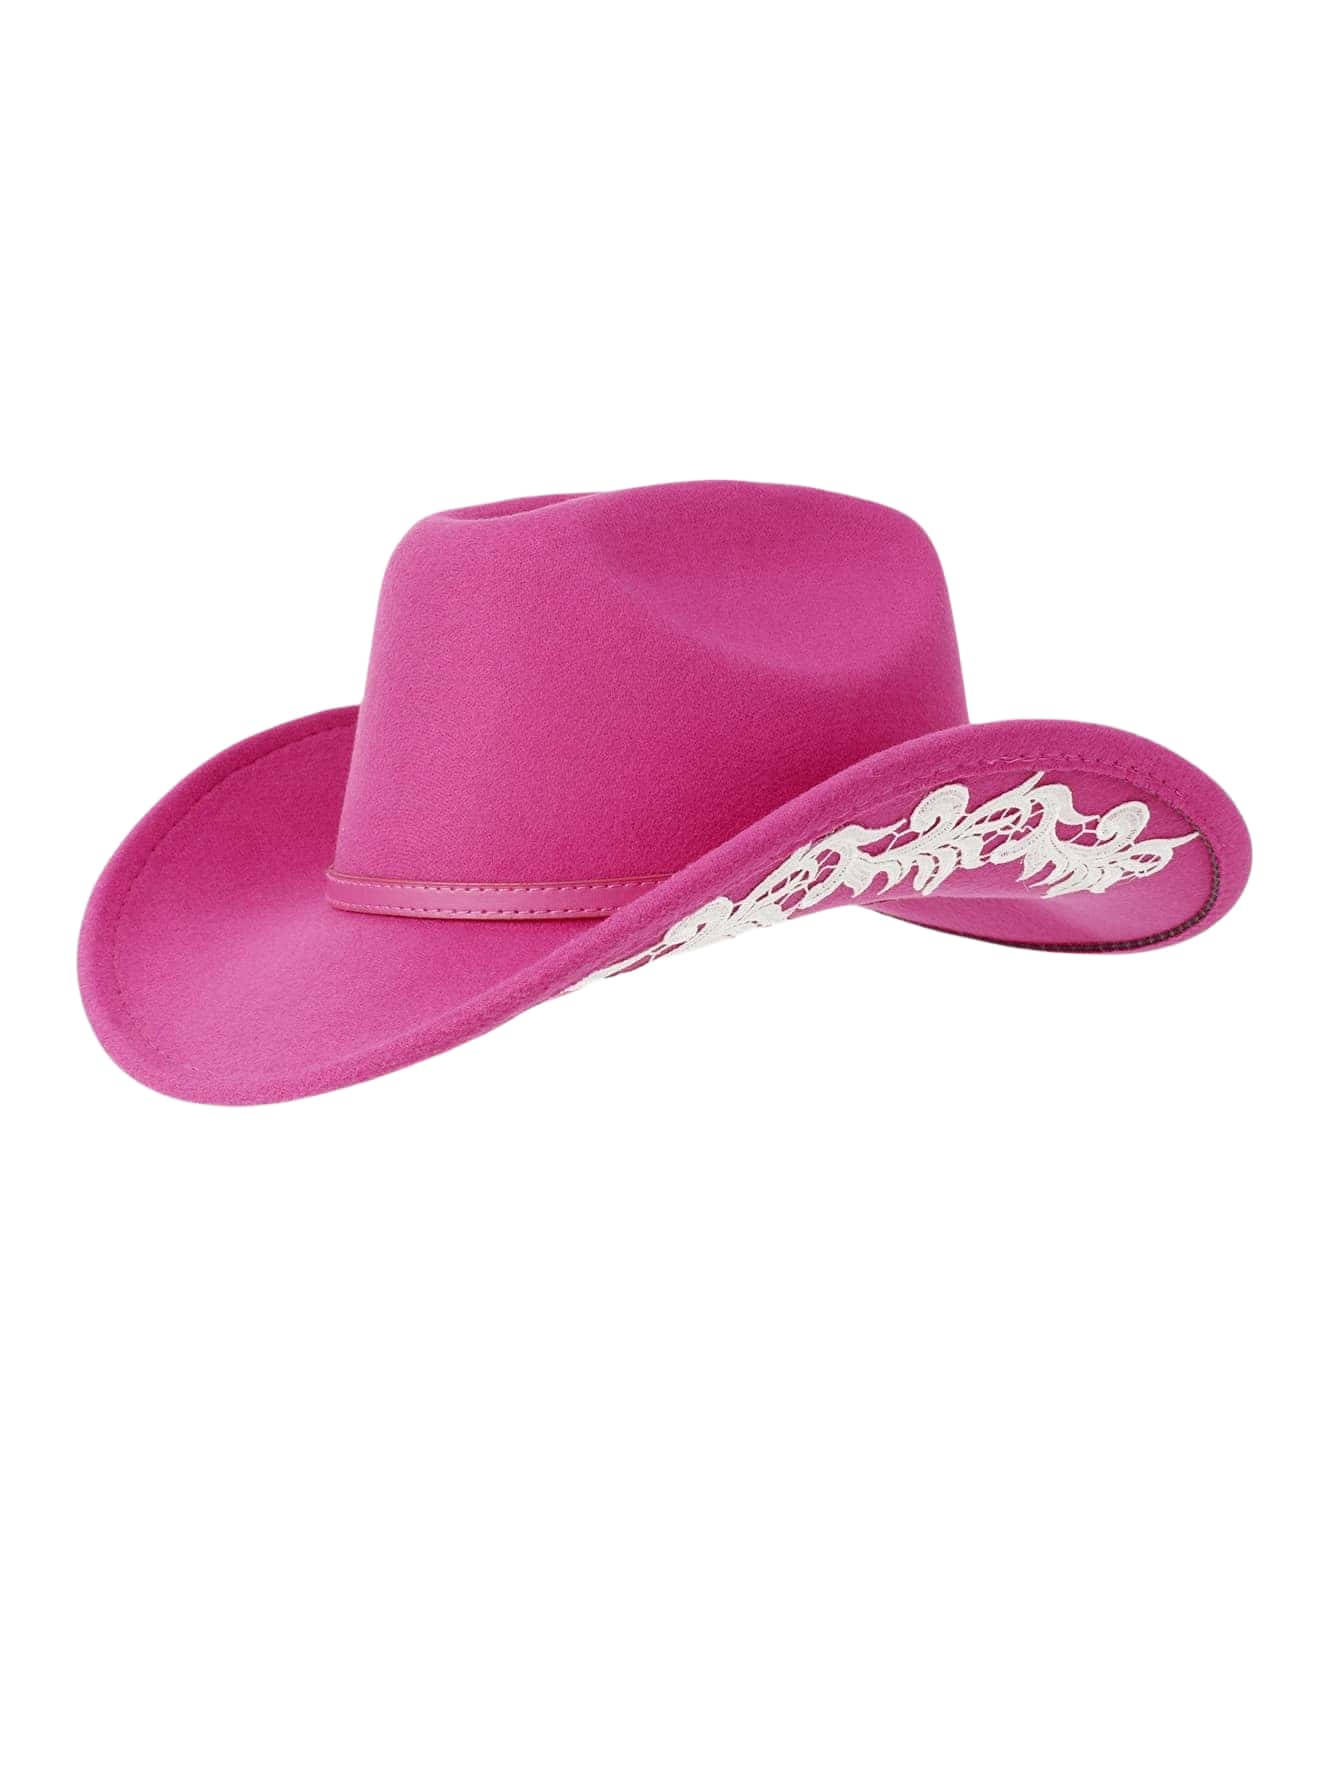 Яркая ковбойская шляпа в стиле допамина, ярко-розовый